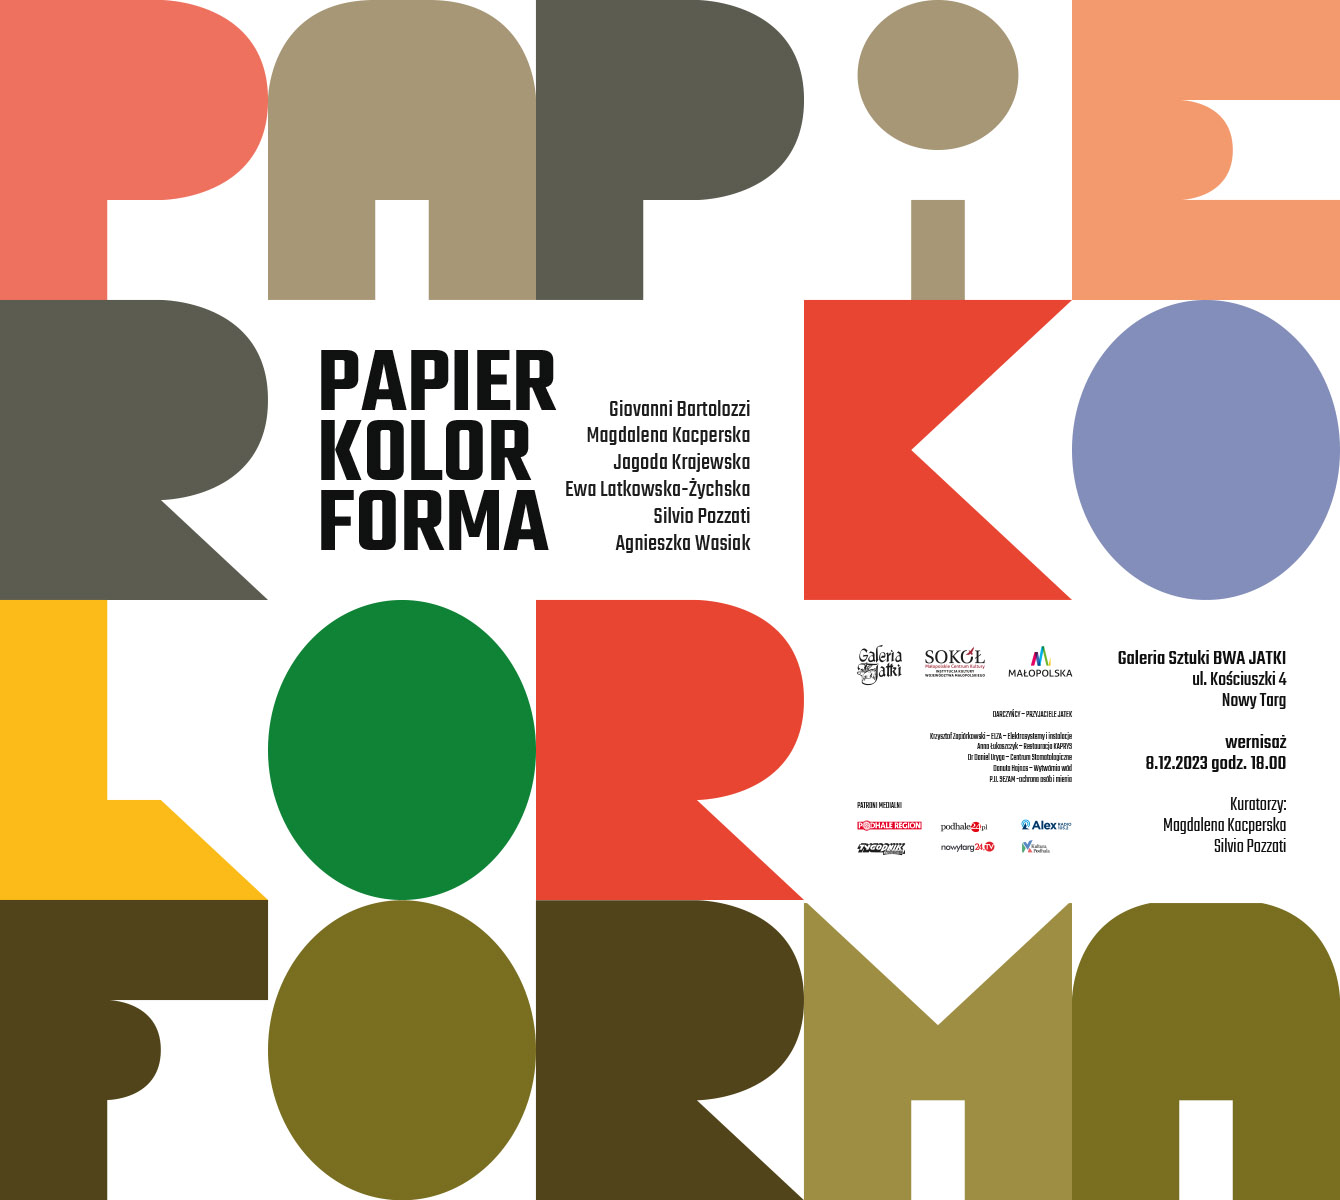 Papier/kolor/forma